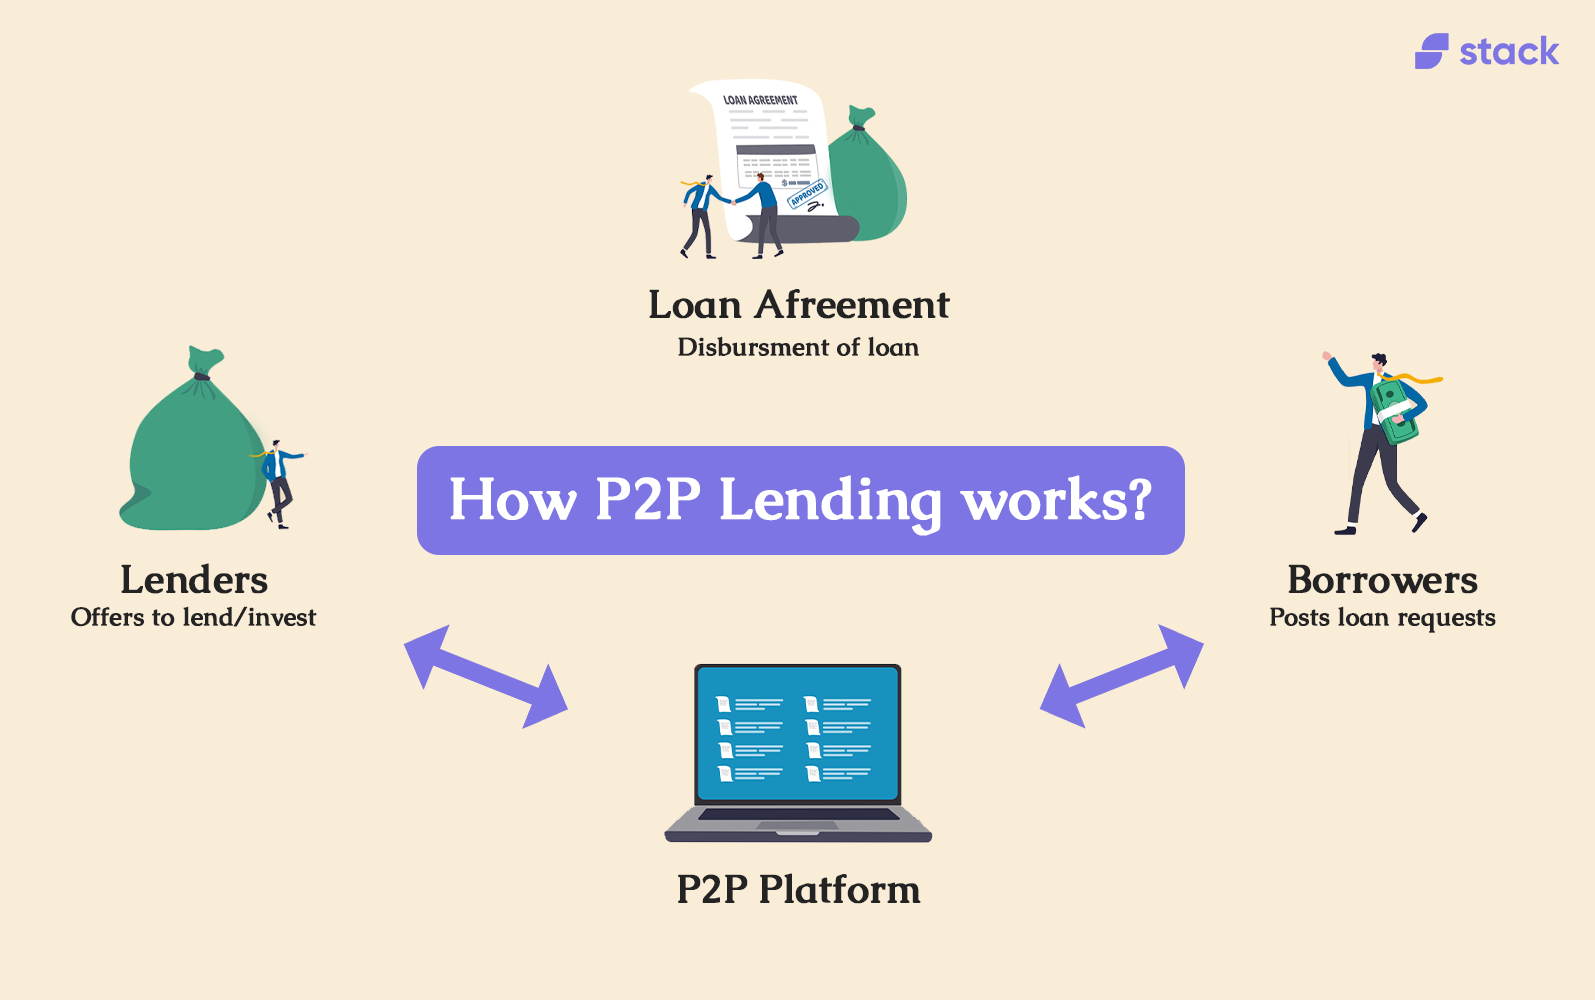 How P2P Lending Works?